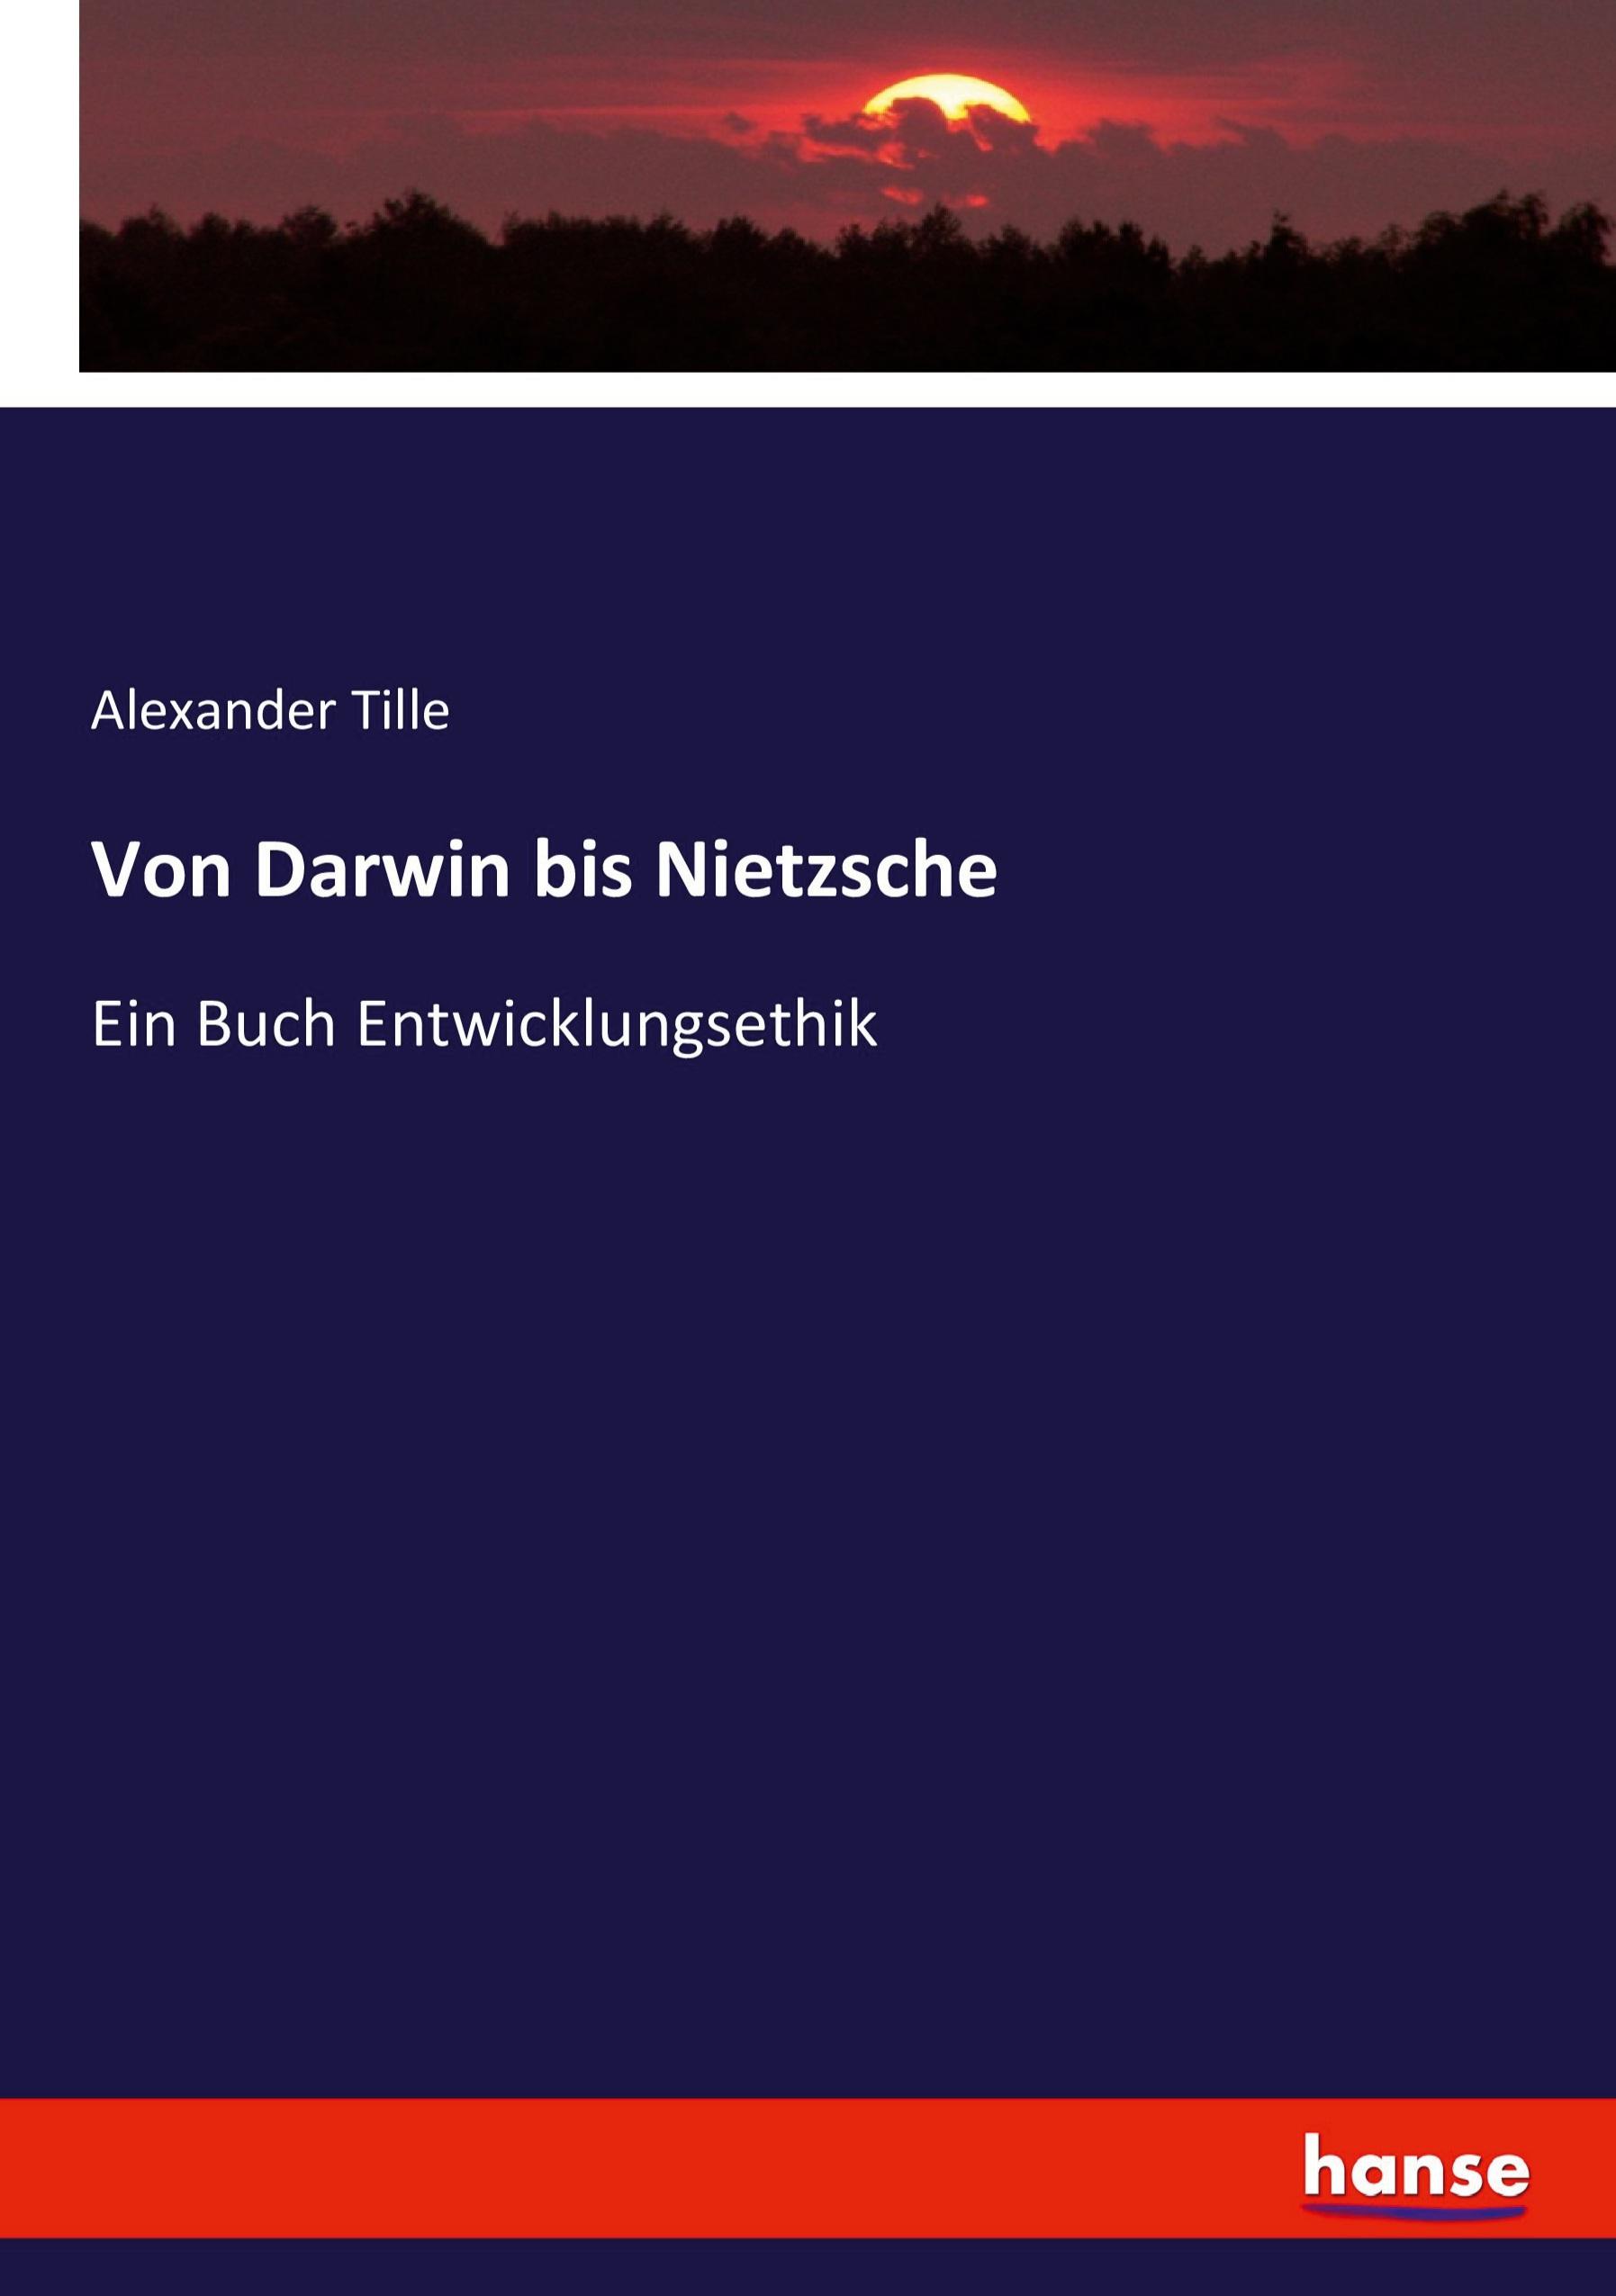 Von Darwin bis Nietzsche | Ein Buch Entwicklungsethik | Alexander Tille | Taschenbuch | Paperback | 256 S. | Deutsch | 2021 | hansebooks | EAN 9783744654647 - Tille, Alexander